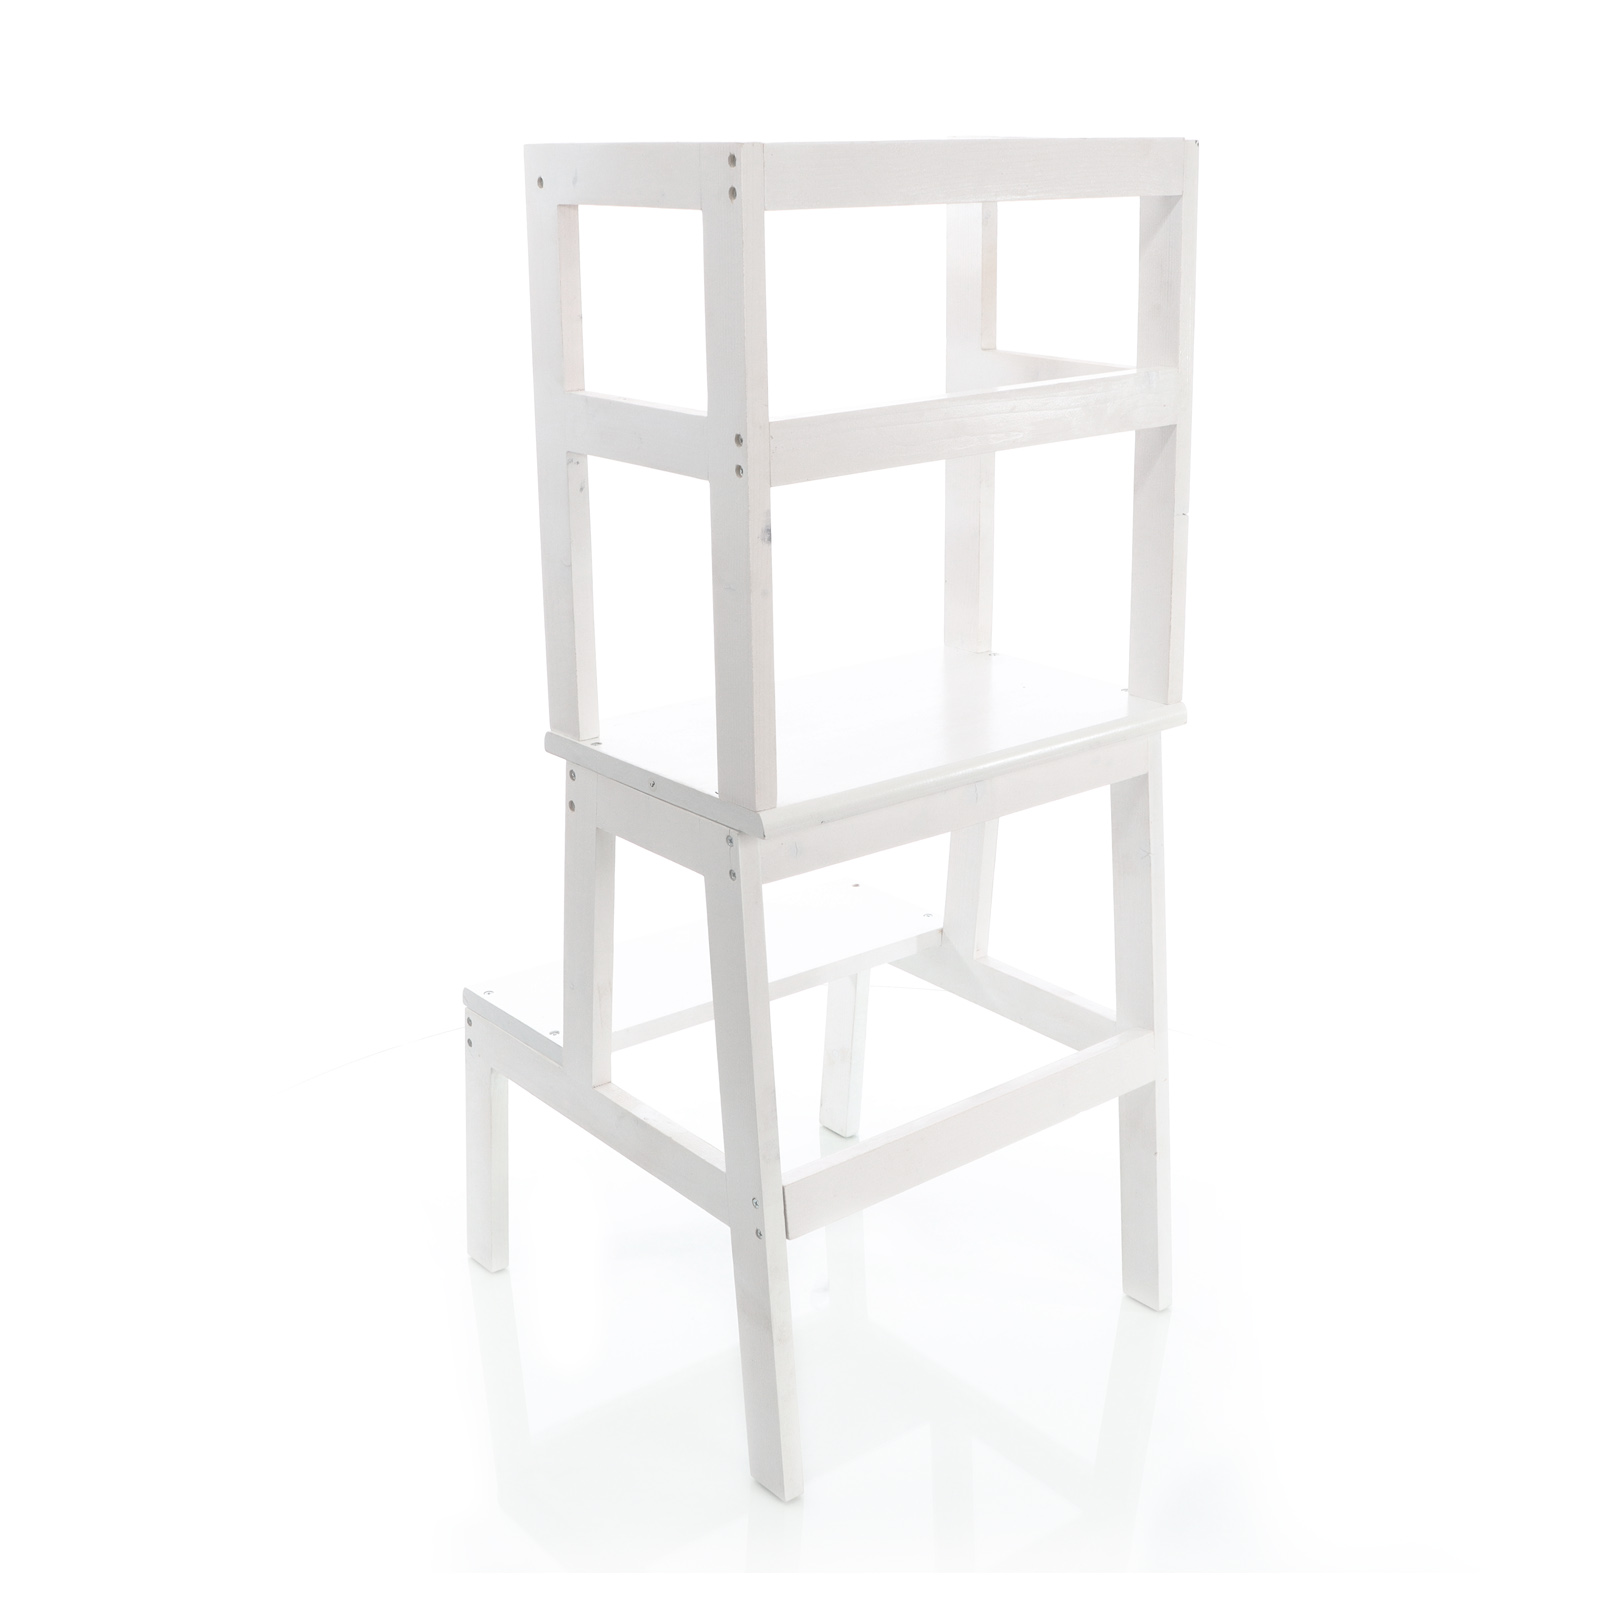 Toboli Lernturm Weiß aus Holz 43x40x91cm Kinderstuhl mit Geländer